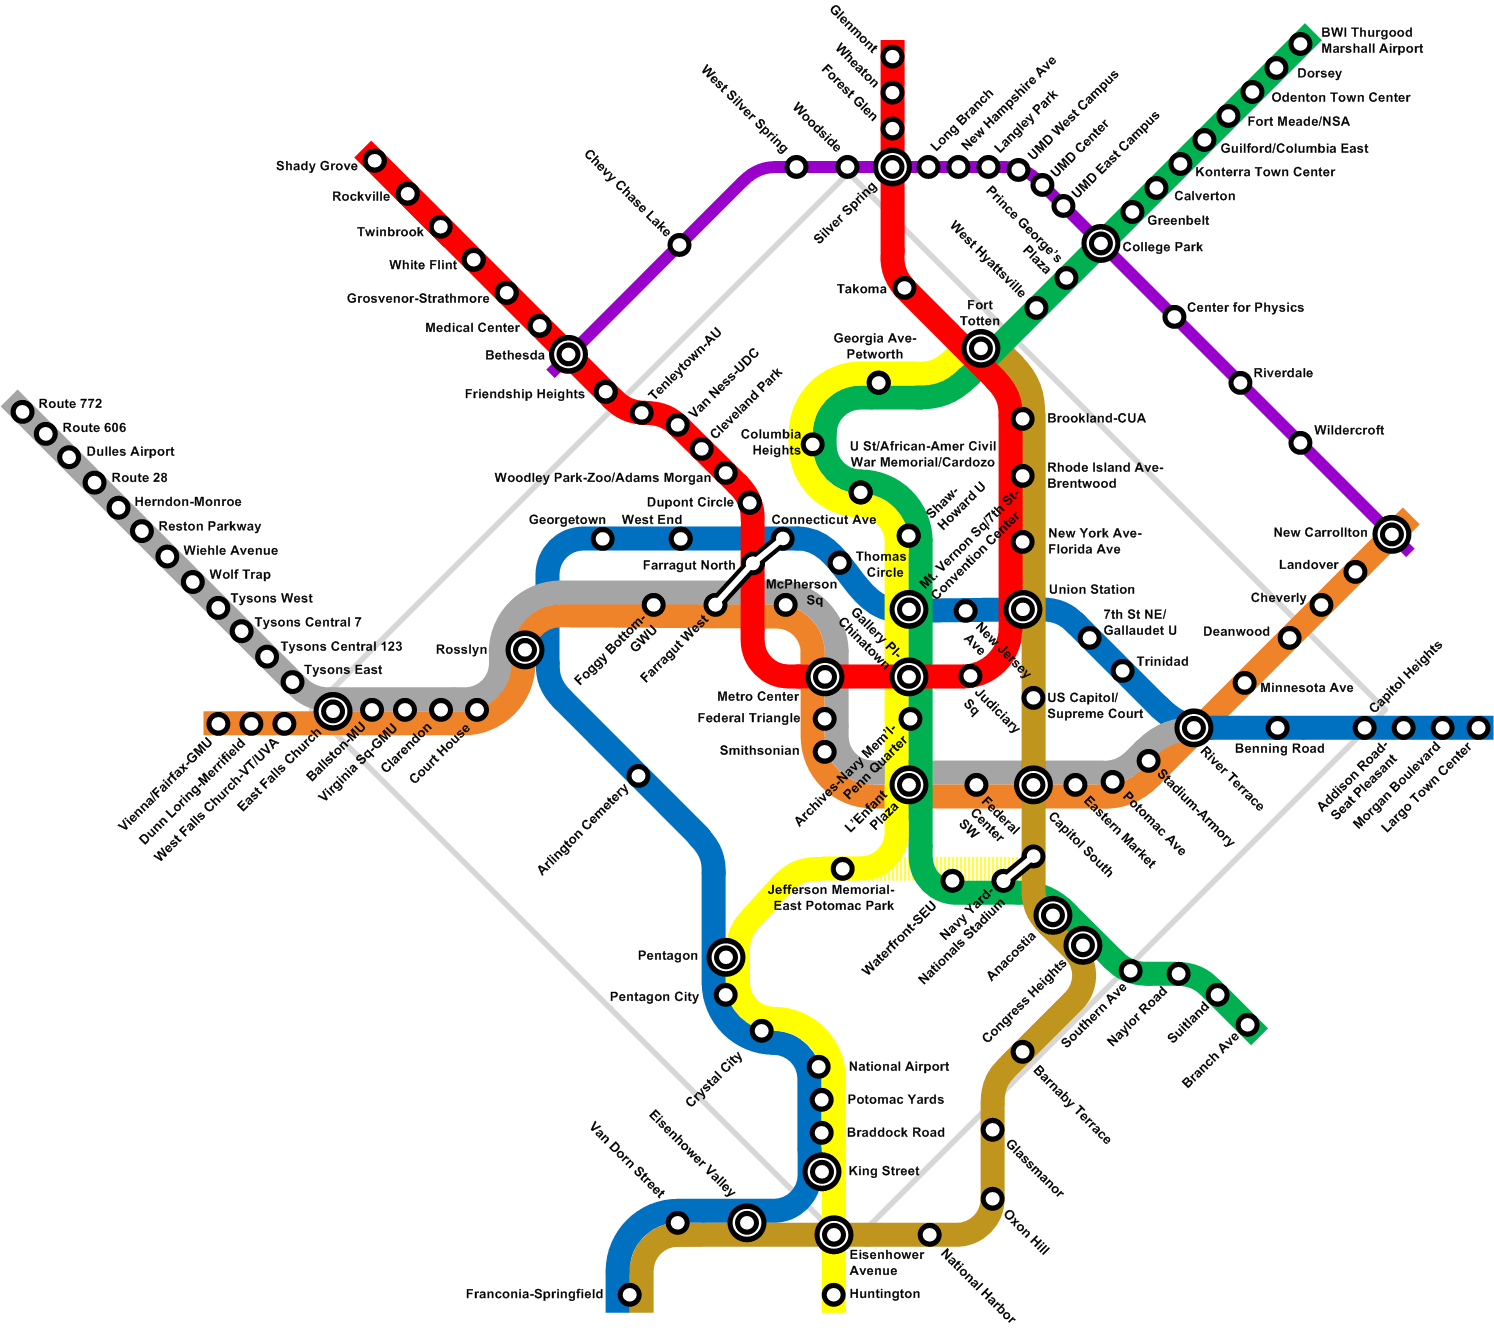 washington metro map large, Image Viewer,